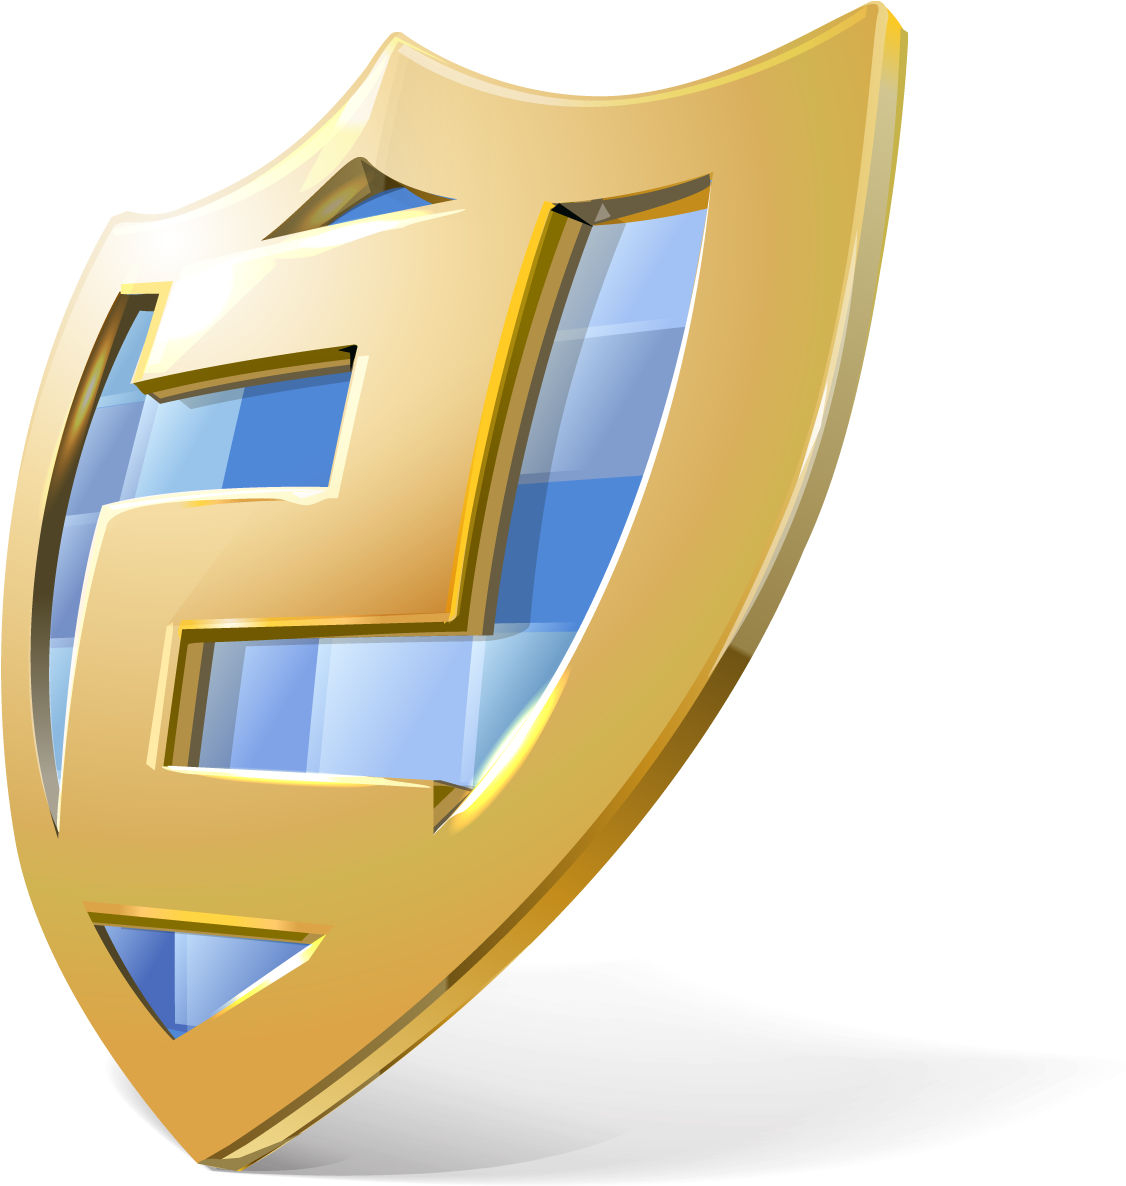 Emsisoft Anti-malware Free Download - Emsisoft Anti Malware Logo (1155x1233)